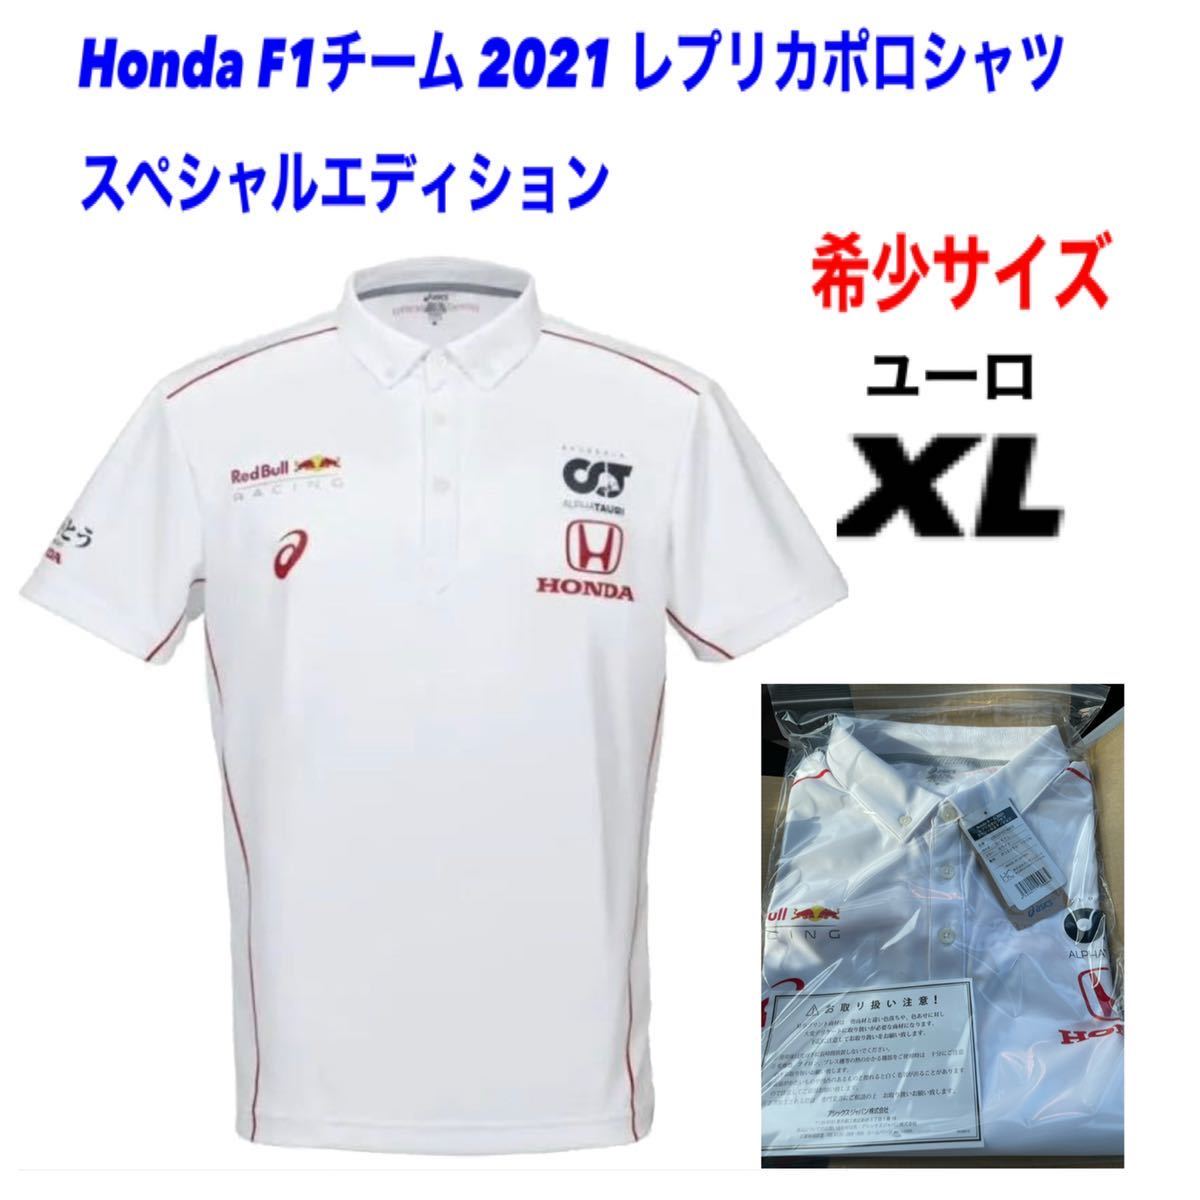 世界の チーム Honda 2021 スペシャル レプリカポロシャツ - ポロシャツ - alrc.asia